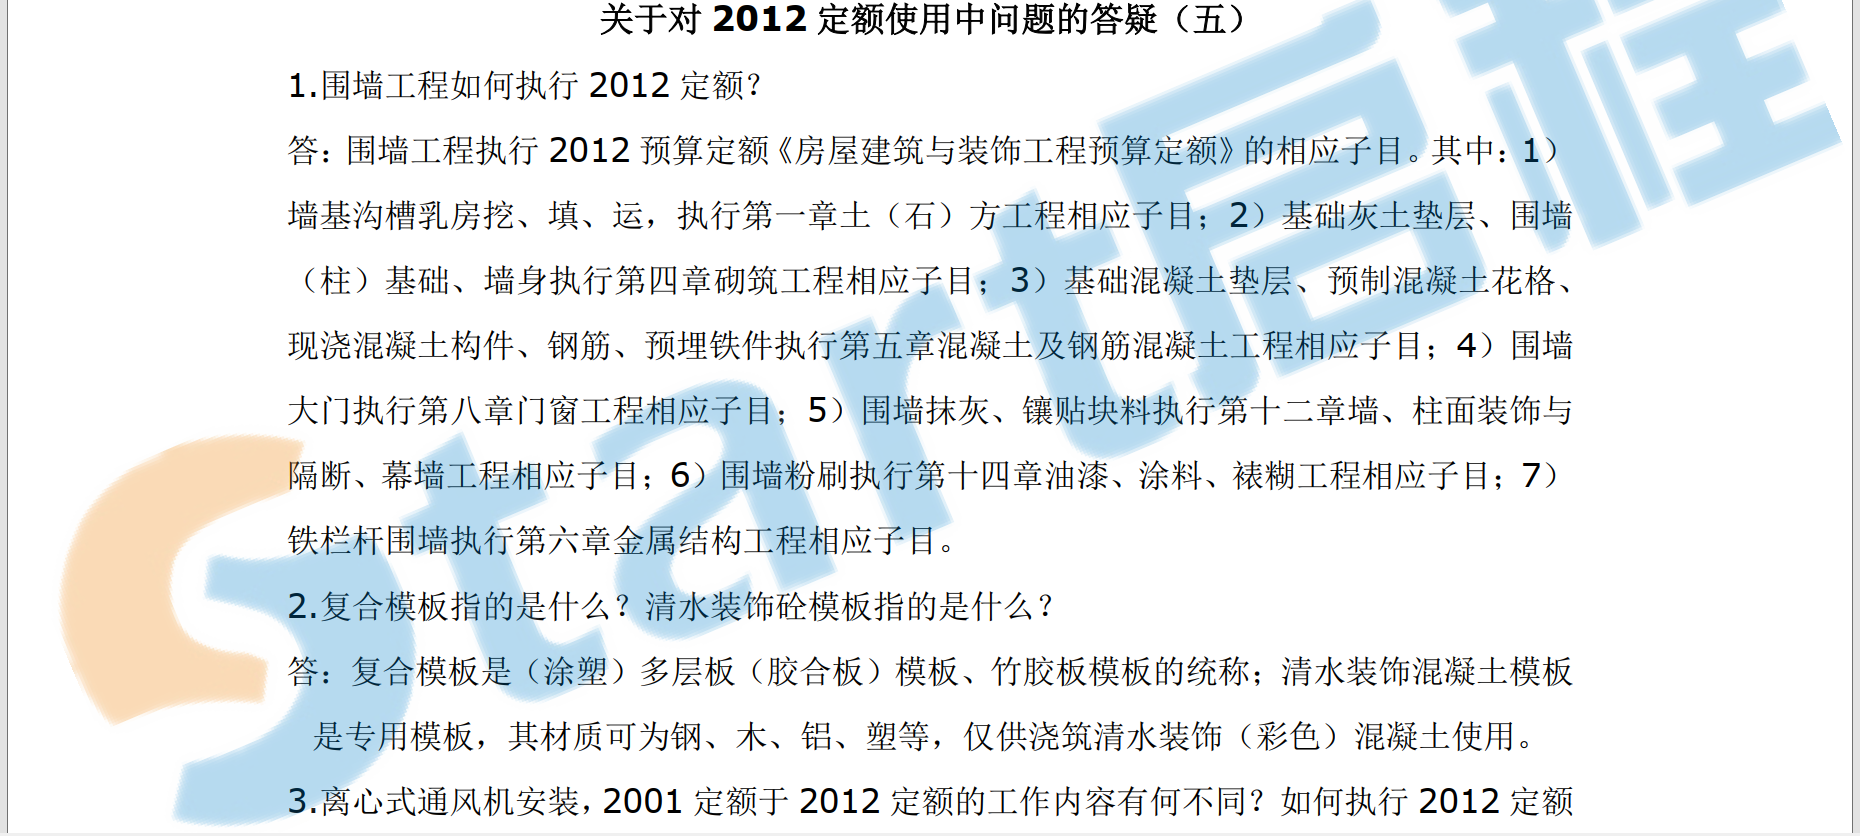 关于对2012北京定额使用中问题的答疑